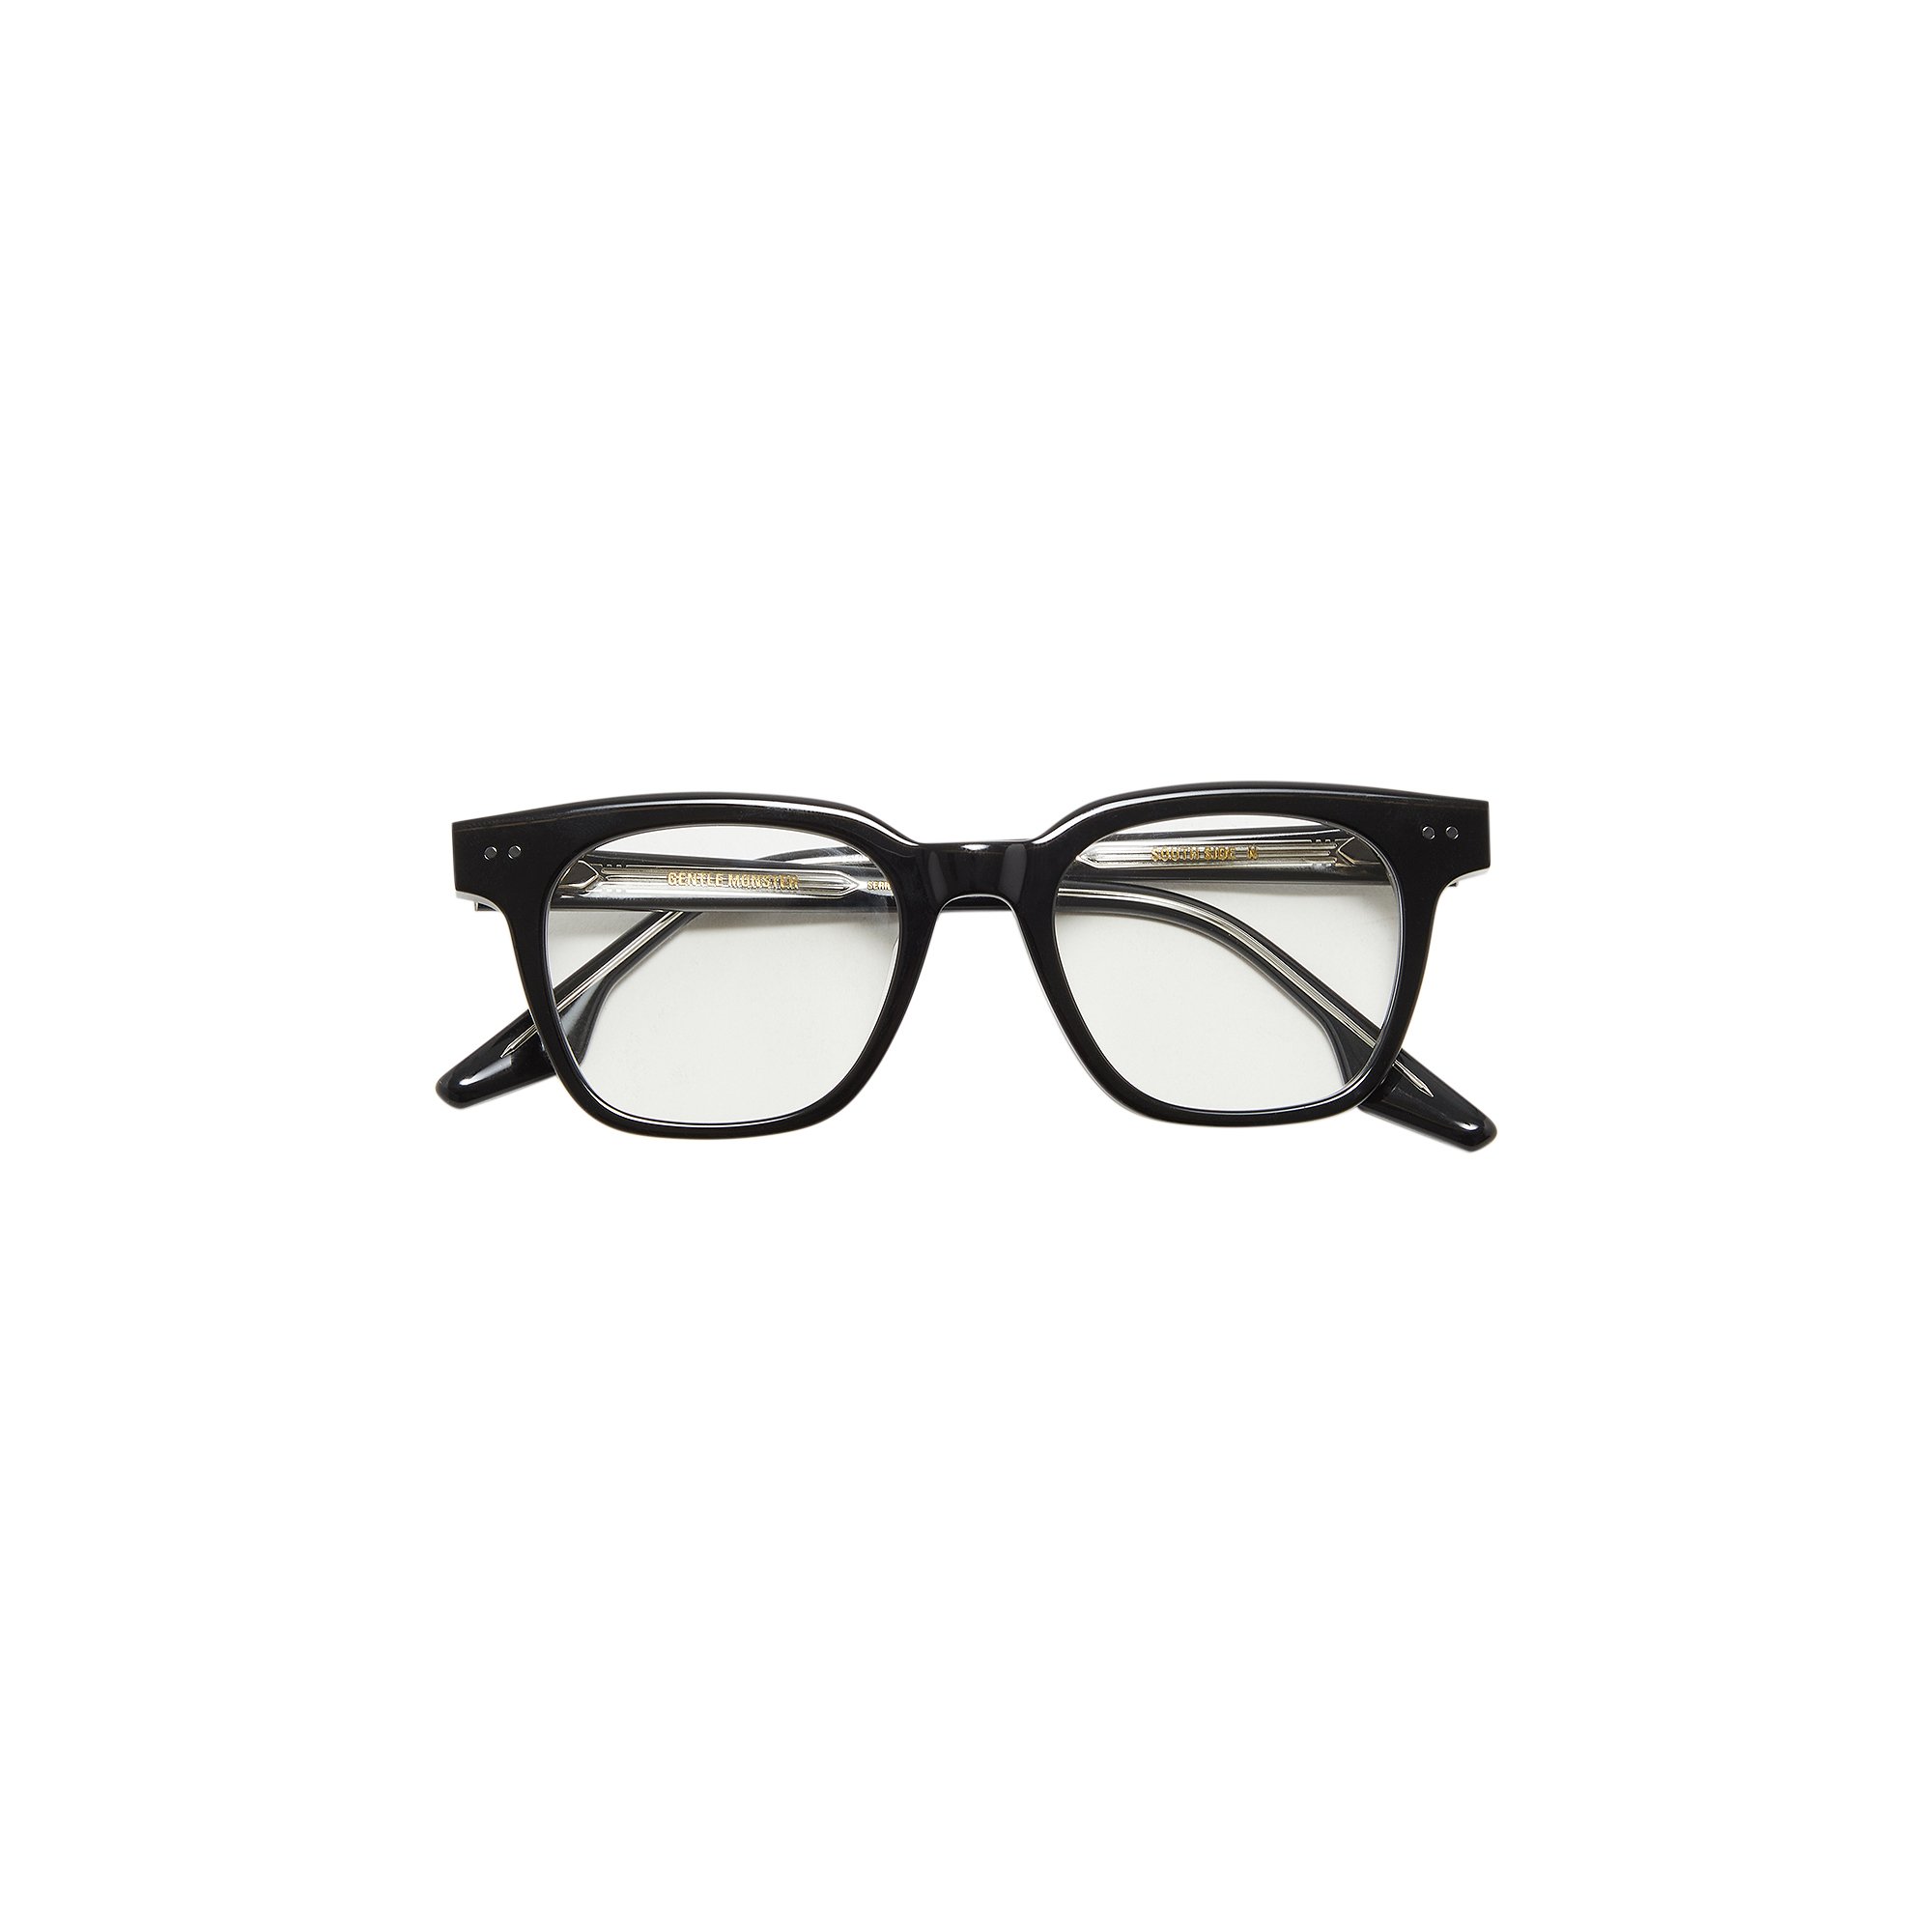 Buy Gentle Monster South Side N 01 Eyeglasses 'Black' - SOUTH SIDE